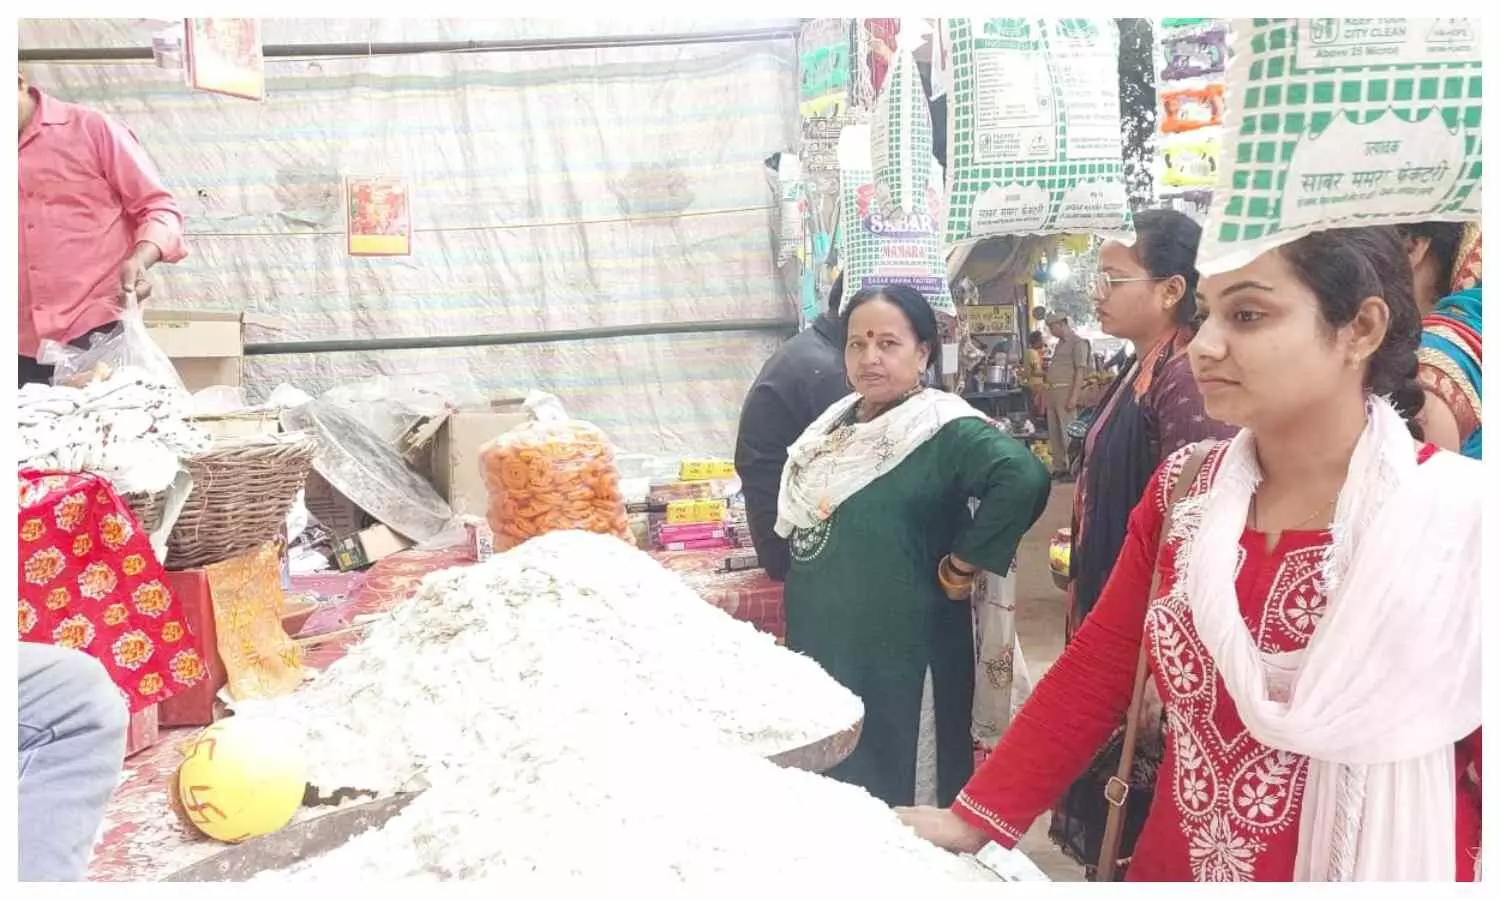 Women shopped extensively on Karva Chauth